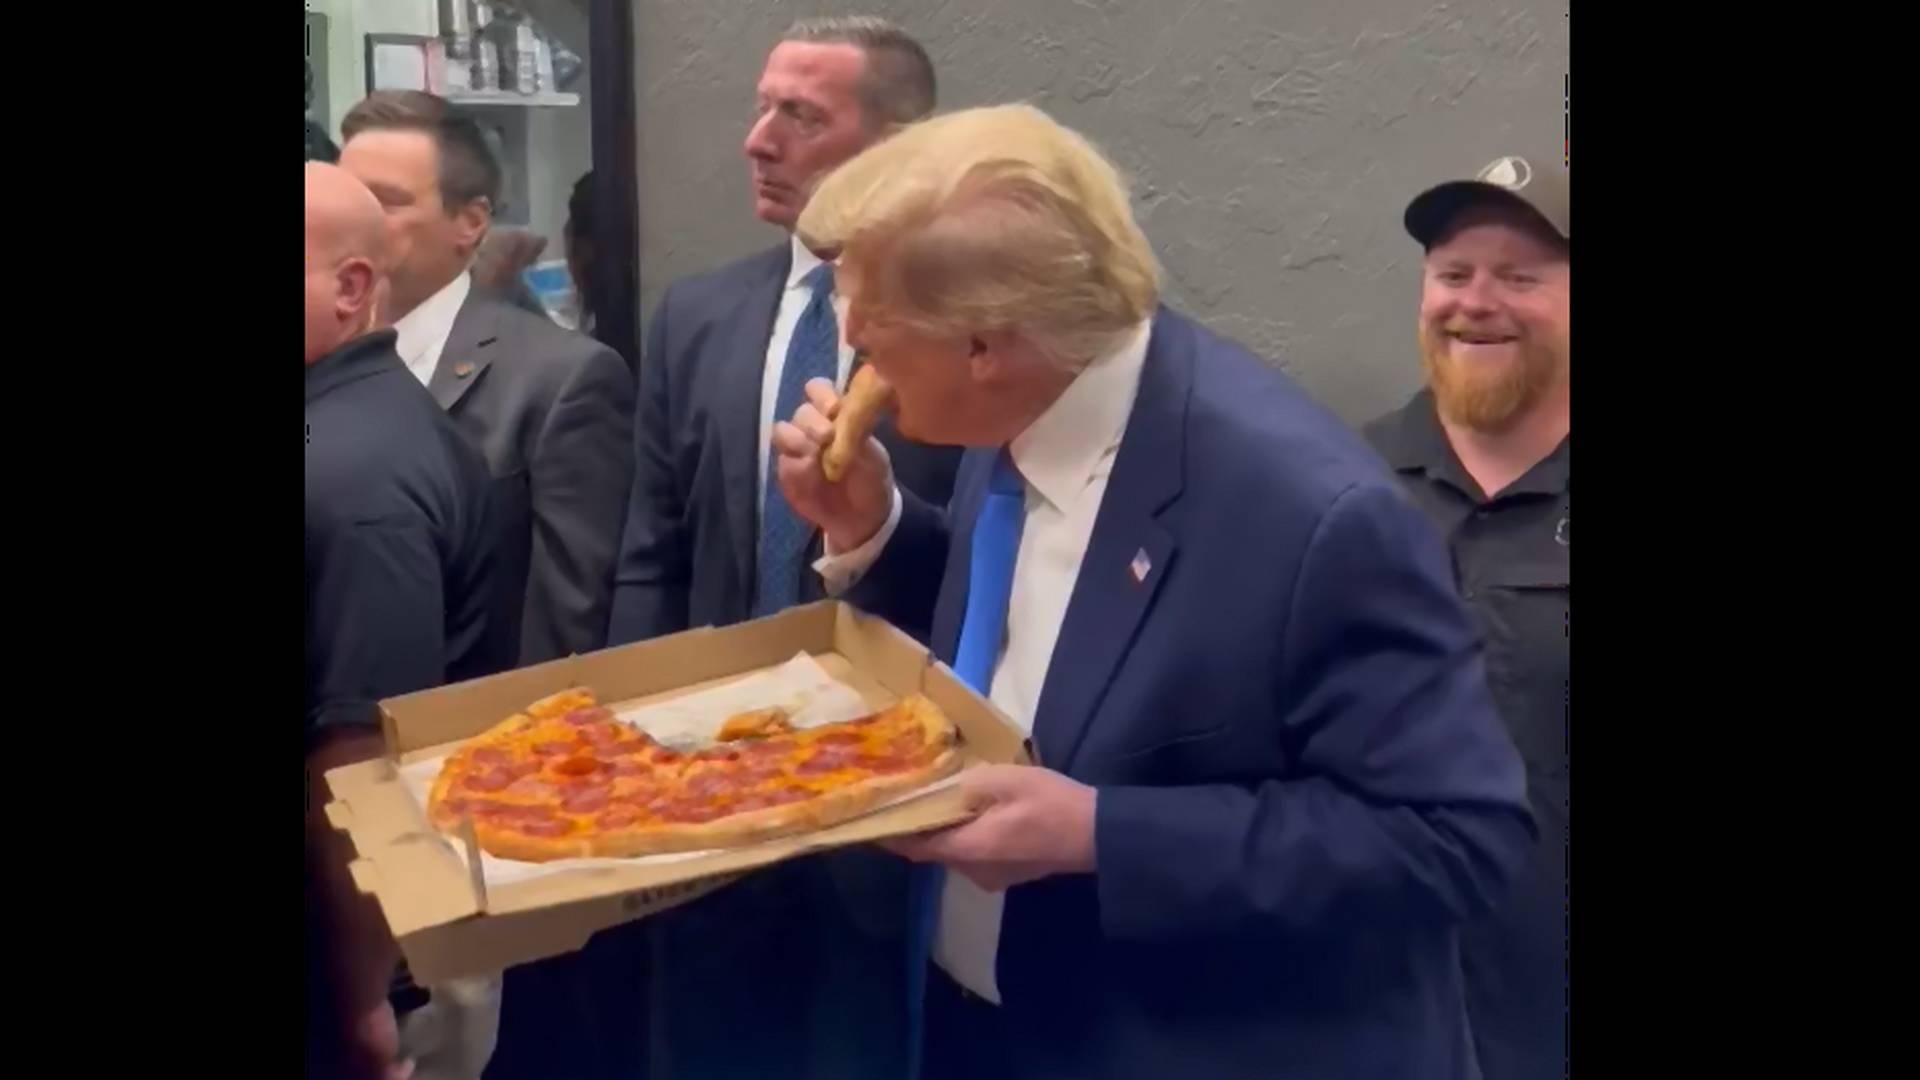 Körülugrálták Trumpot a rajongói, de a pizzából, amibe beleharapott, már nem kértek